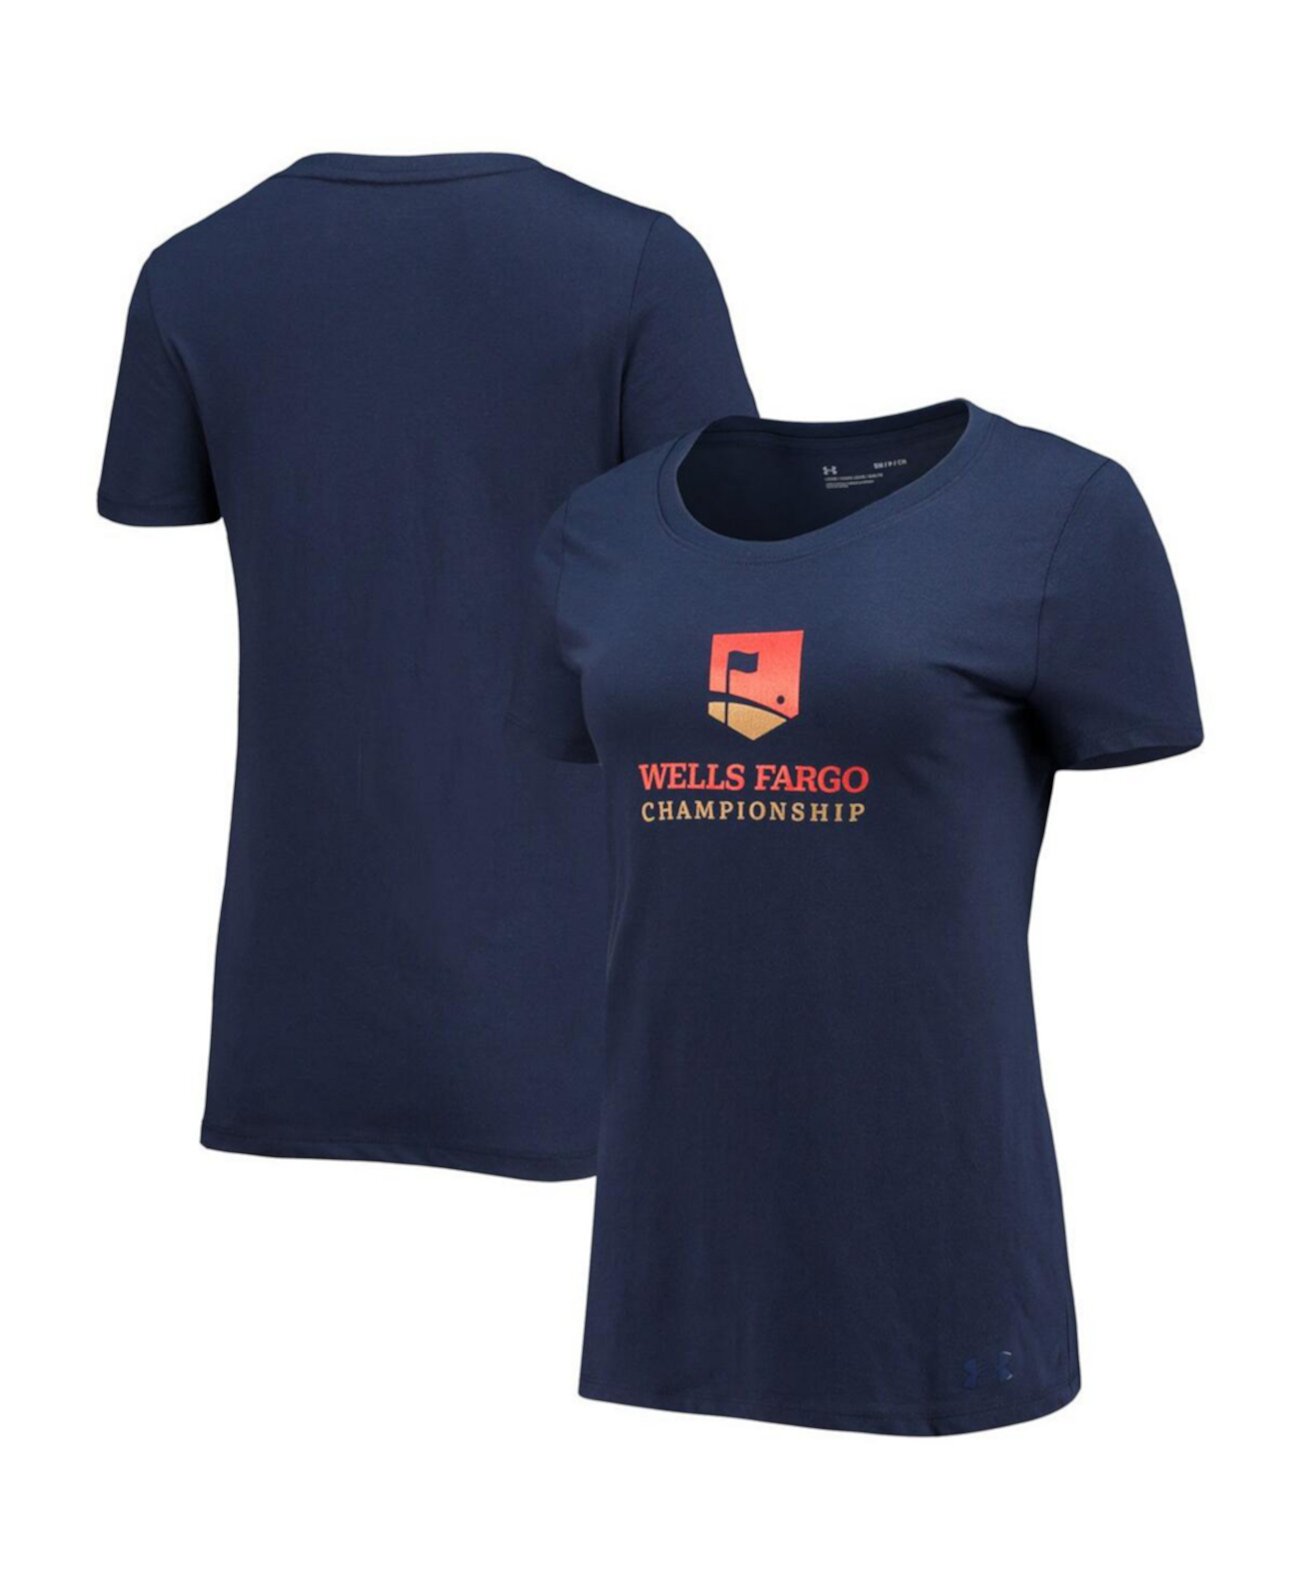 Женская футболка Wells Fargo Championship темно-синего цвета Under Armour